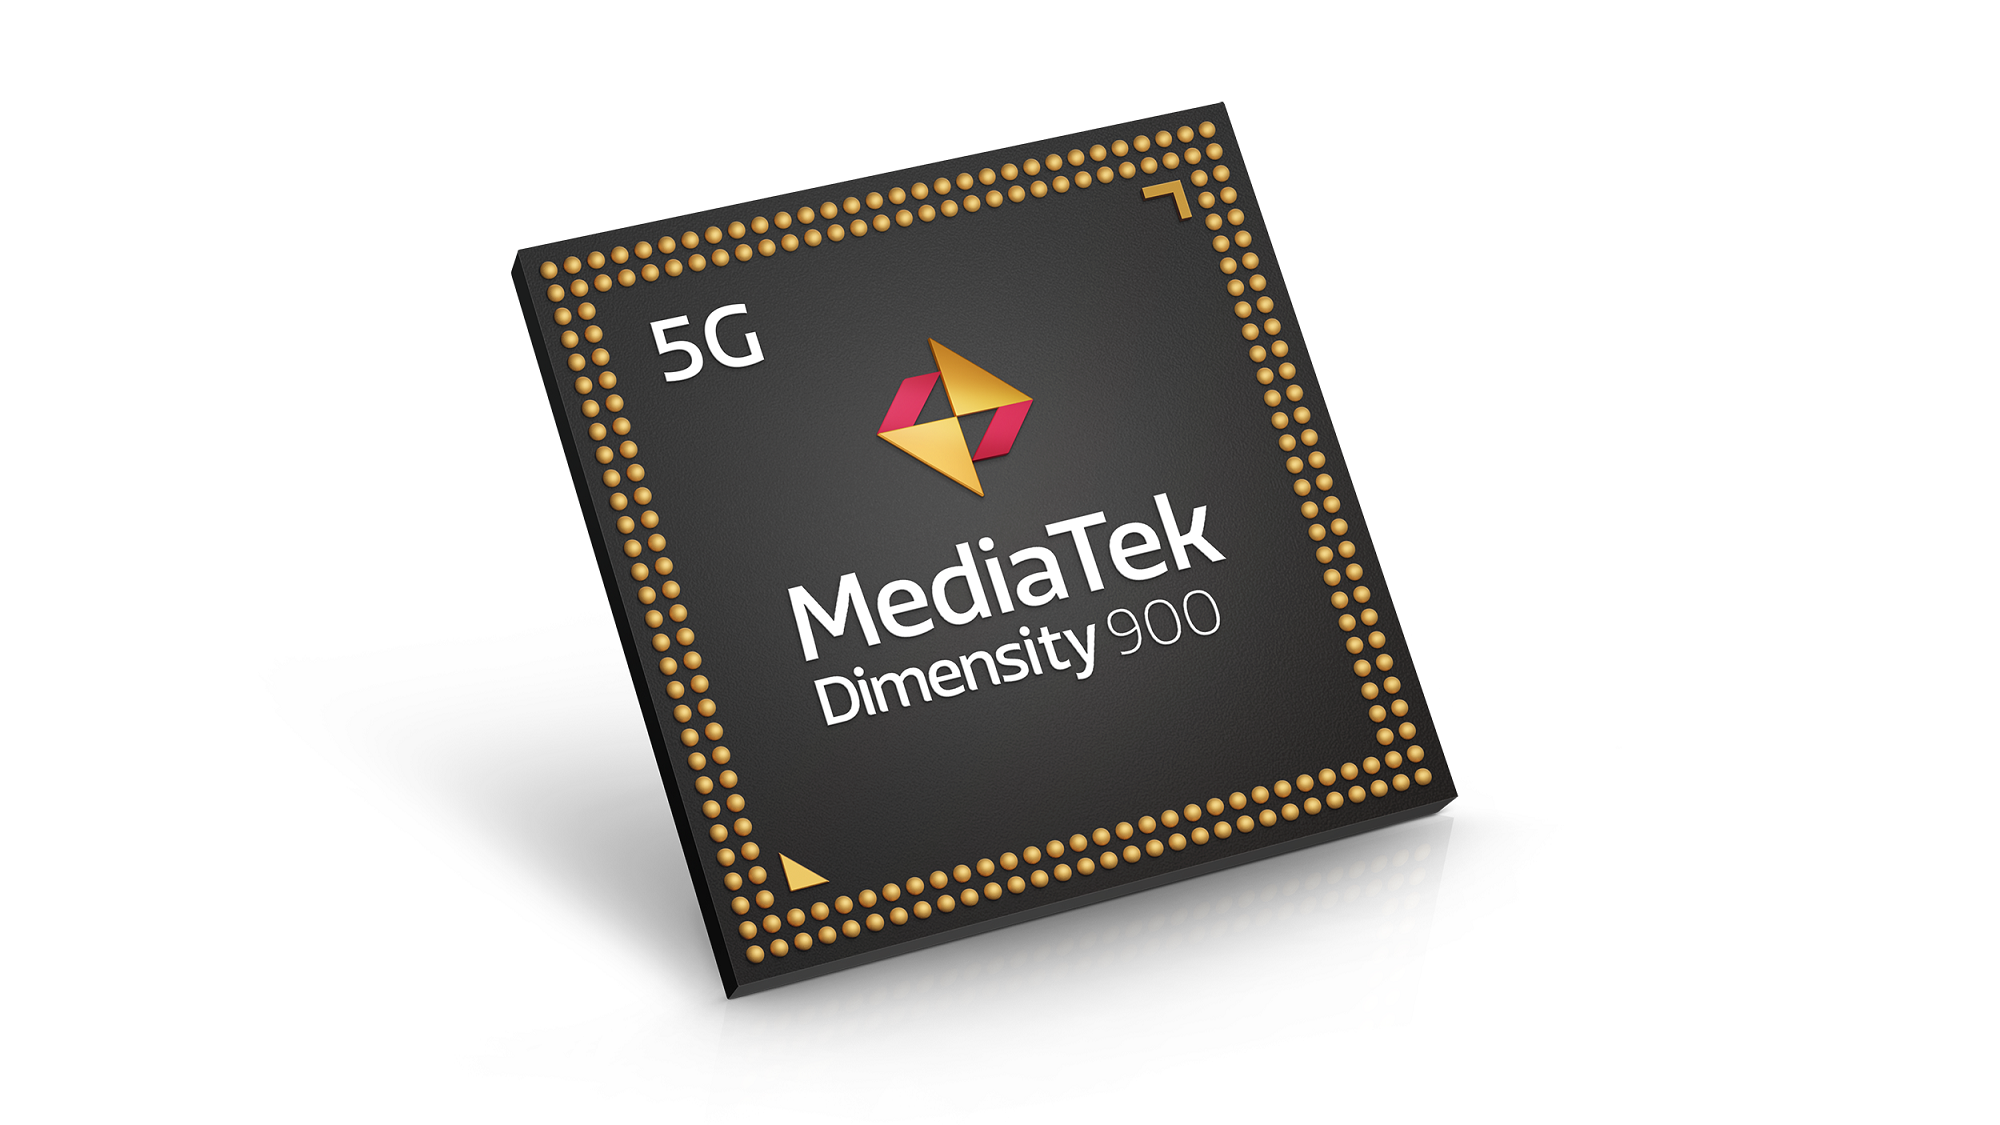 MediaTek Dimensity 900 5G chipset for powering medium smartphones from 2Q21